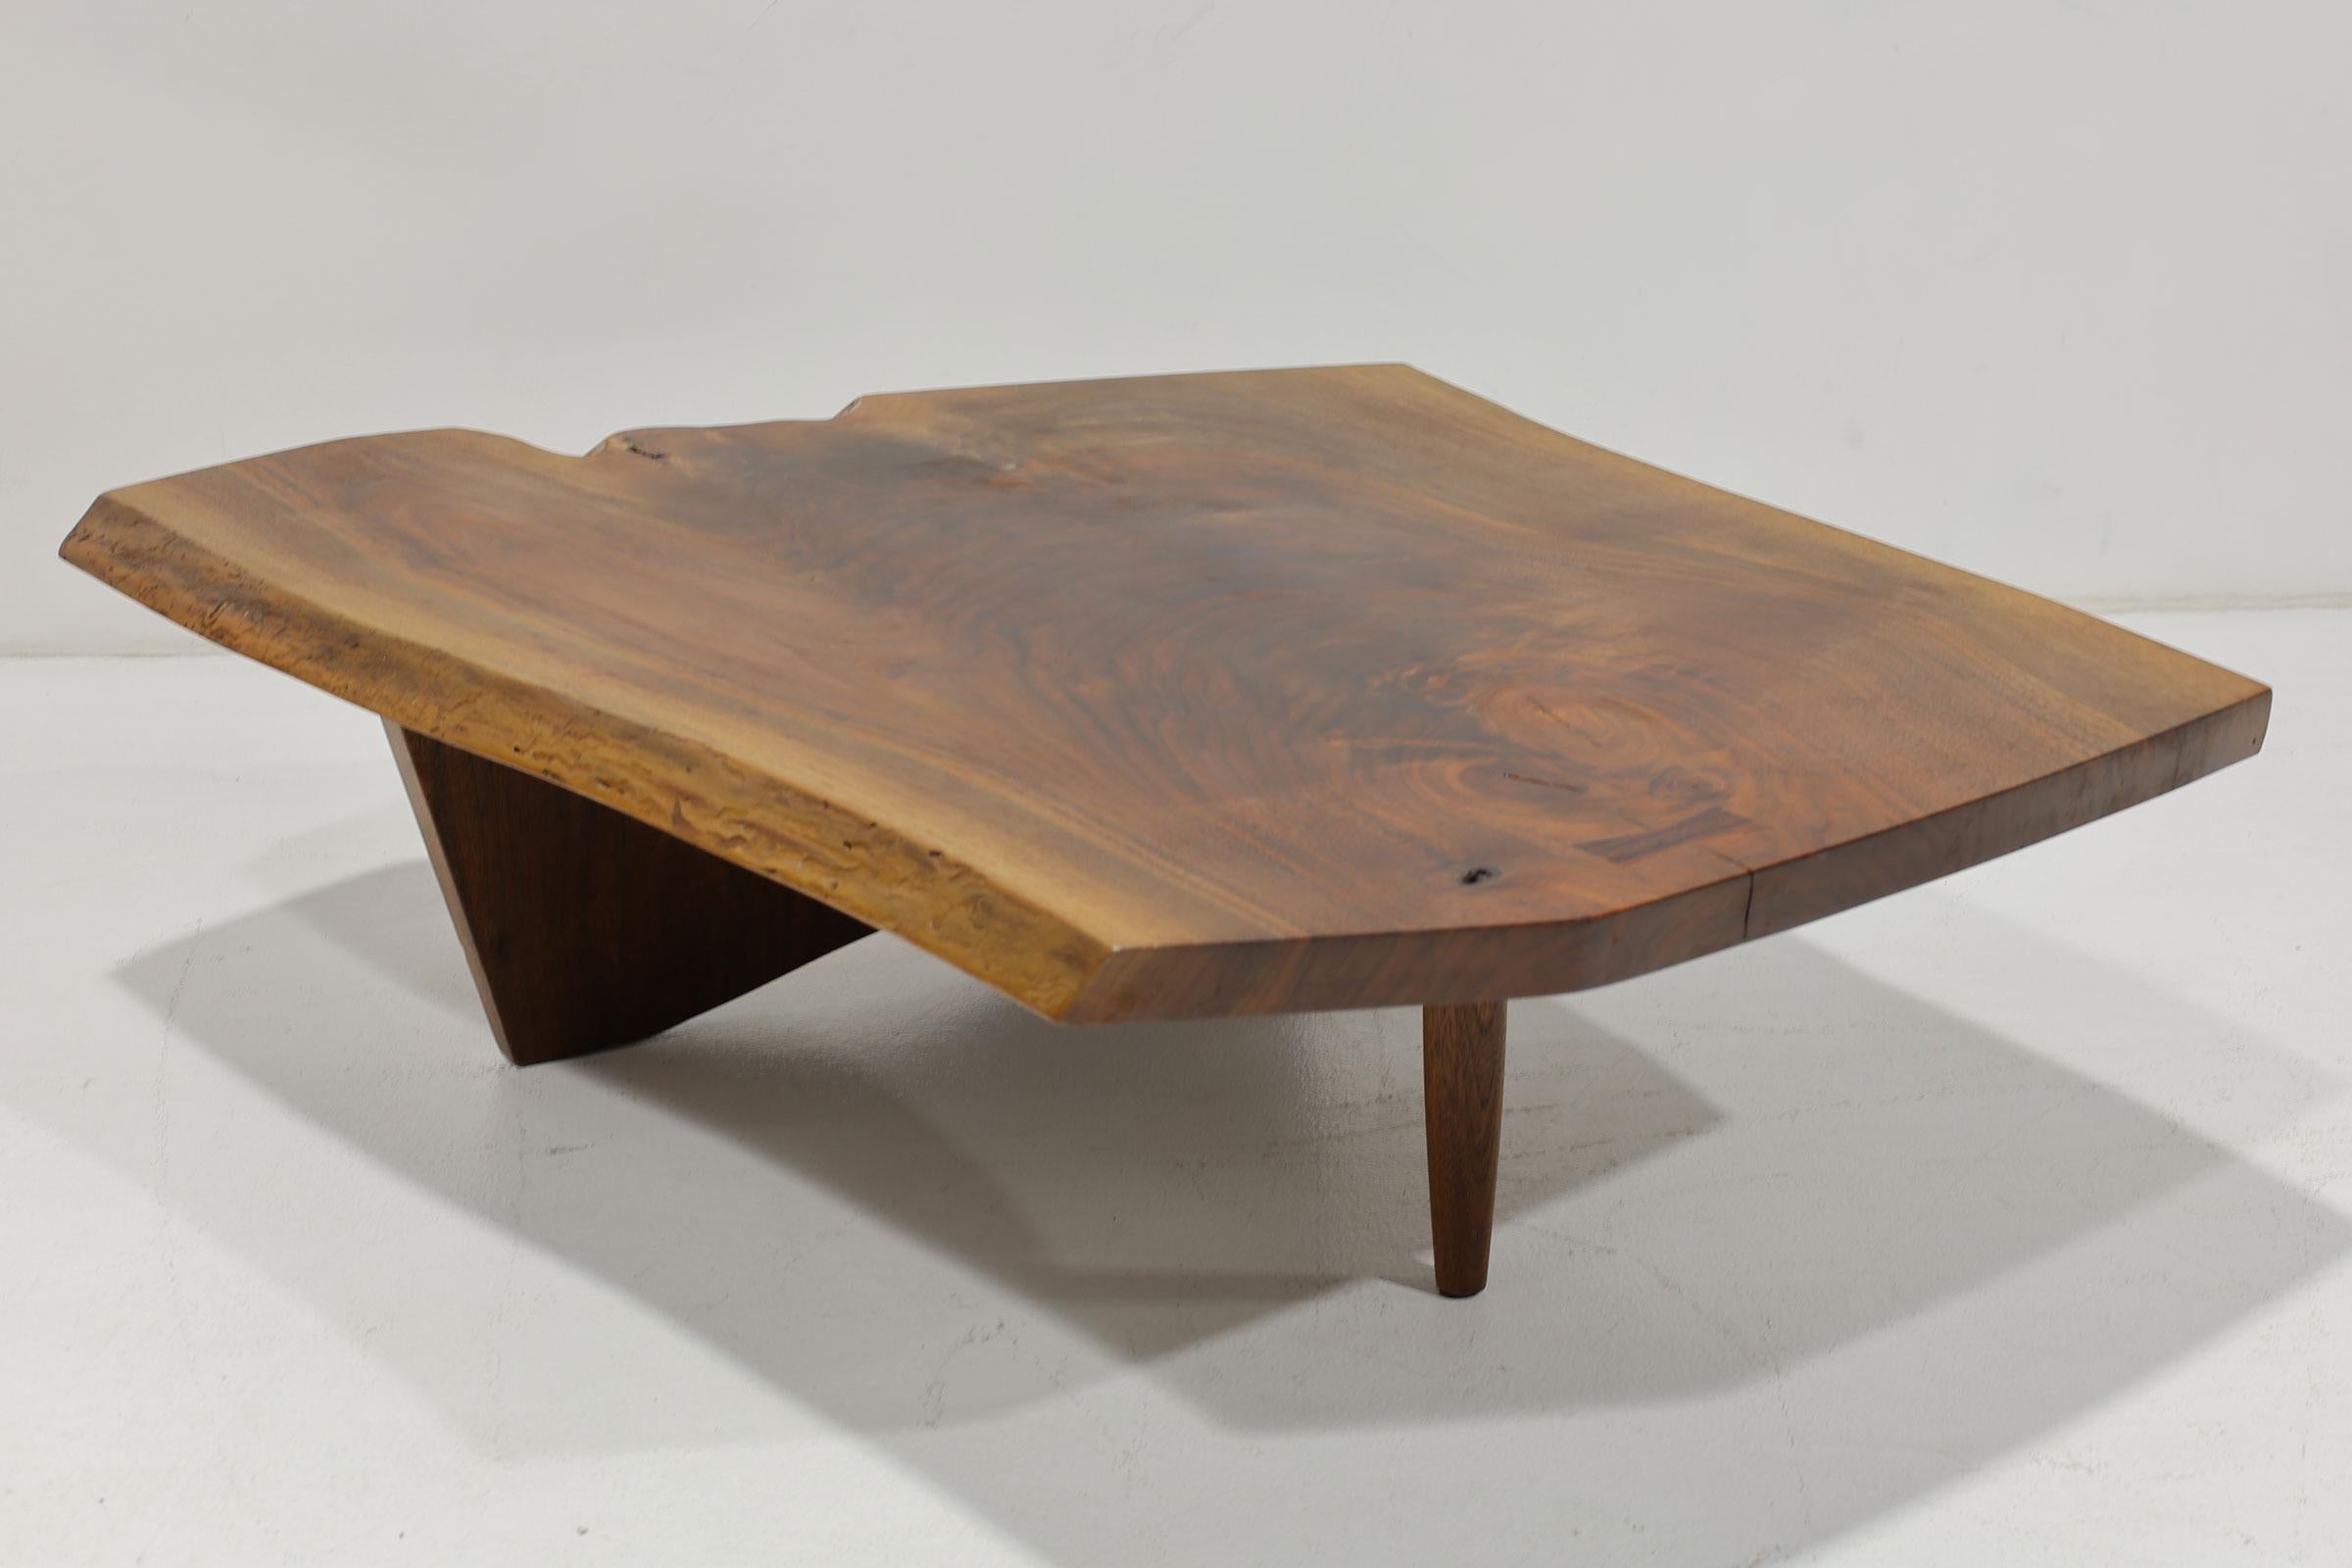 Der Tisch besteht aus einer einzelnen Platte mit freien Kanten, Saftmaserung, Astdetails und einem Schmetterling aus Rosenholz. Signiert und datiert auf der Unterseite 